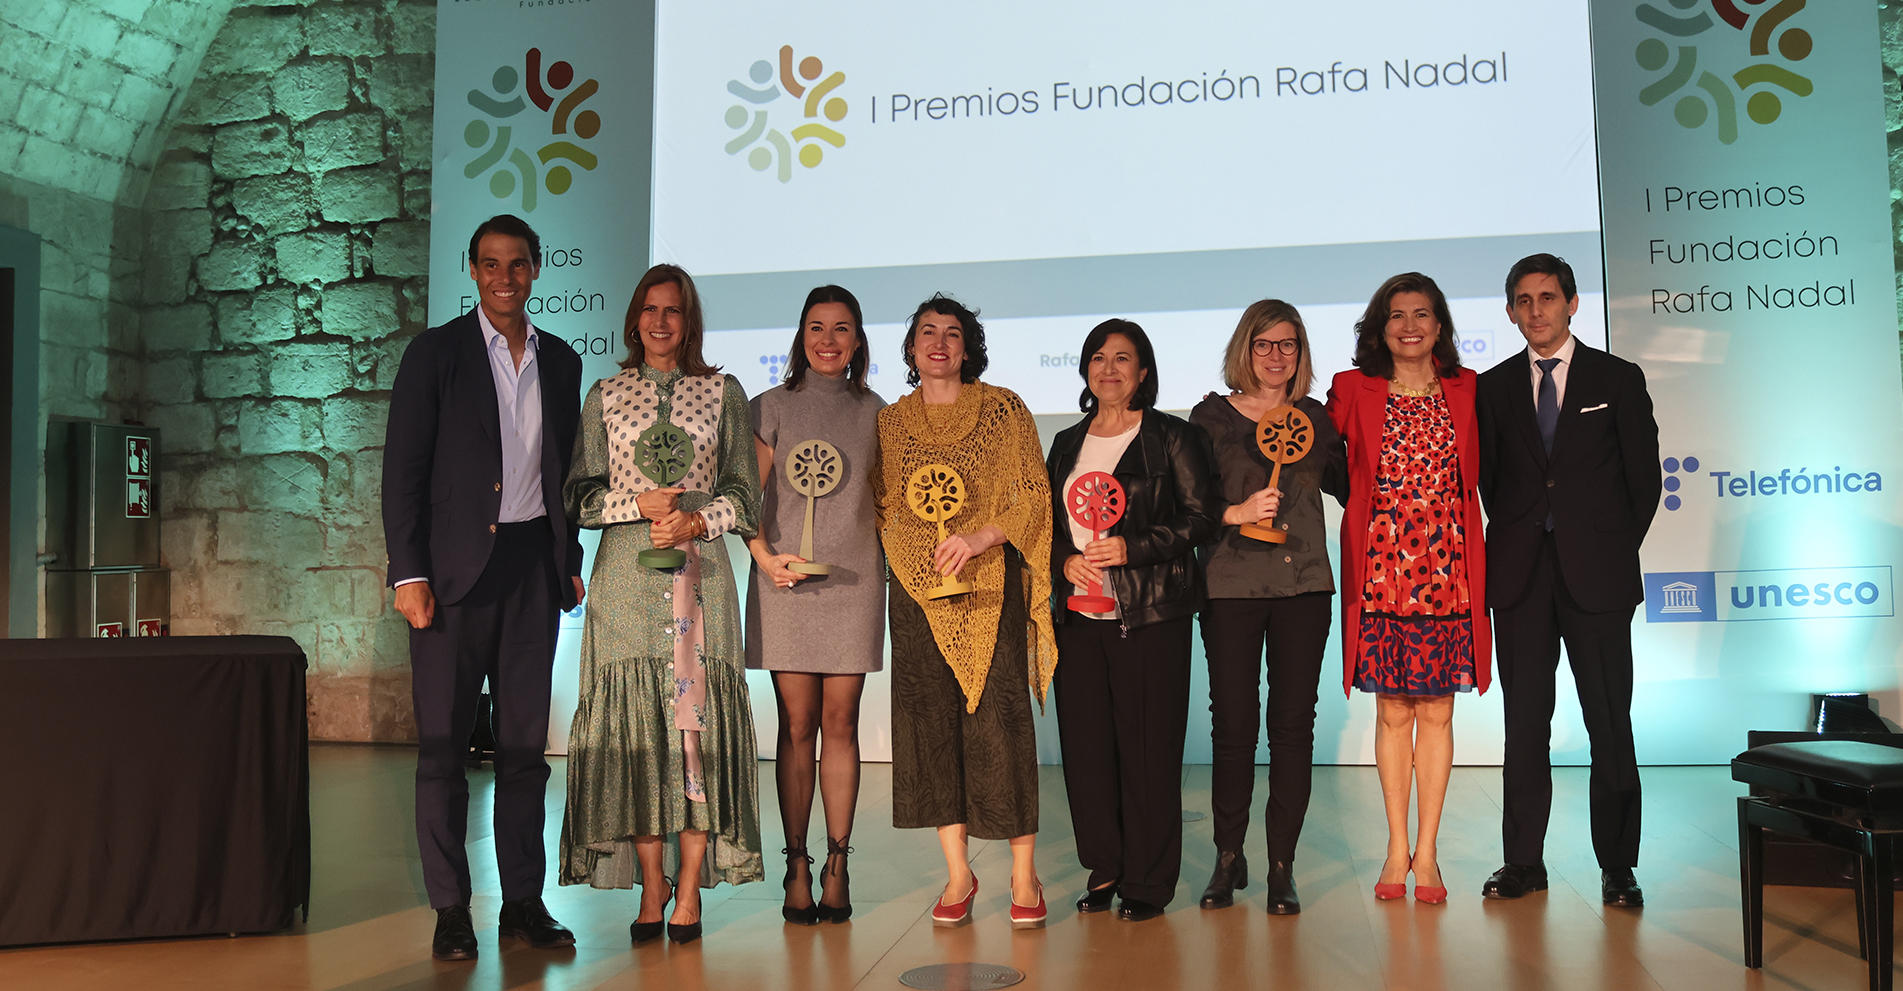 La Fundación Rafa Nadal y Telefónica celebran en Palma de Mallorca los I Premios Fundación Rafa Nadal con la presencia del tenista